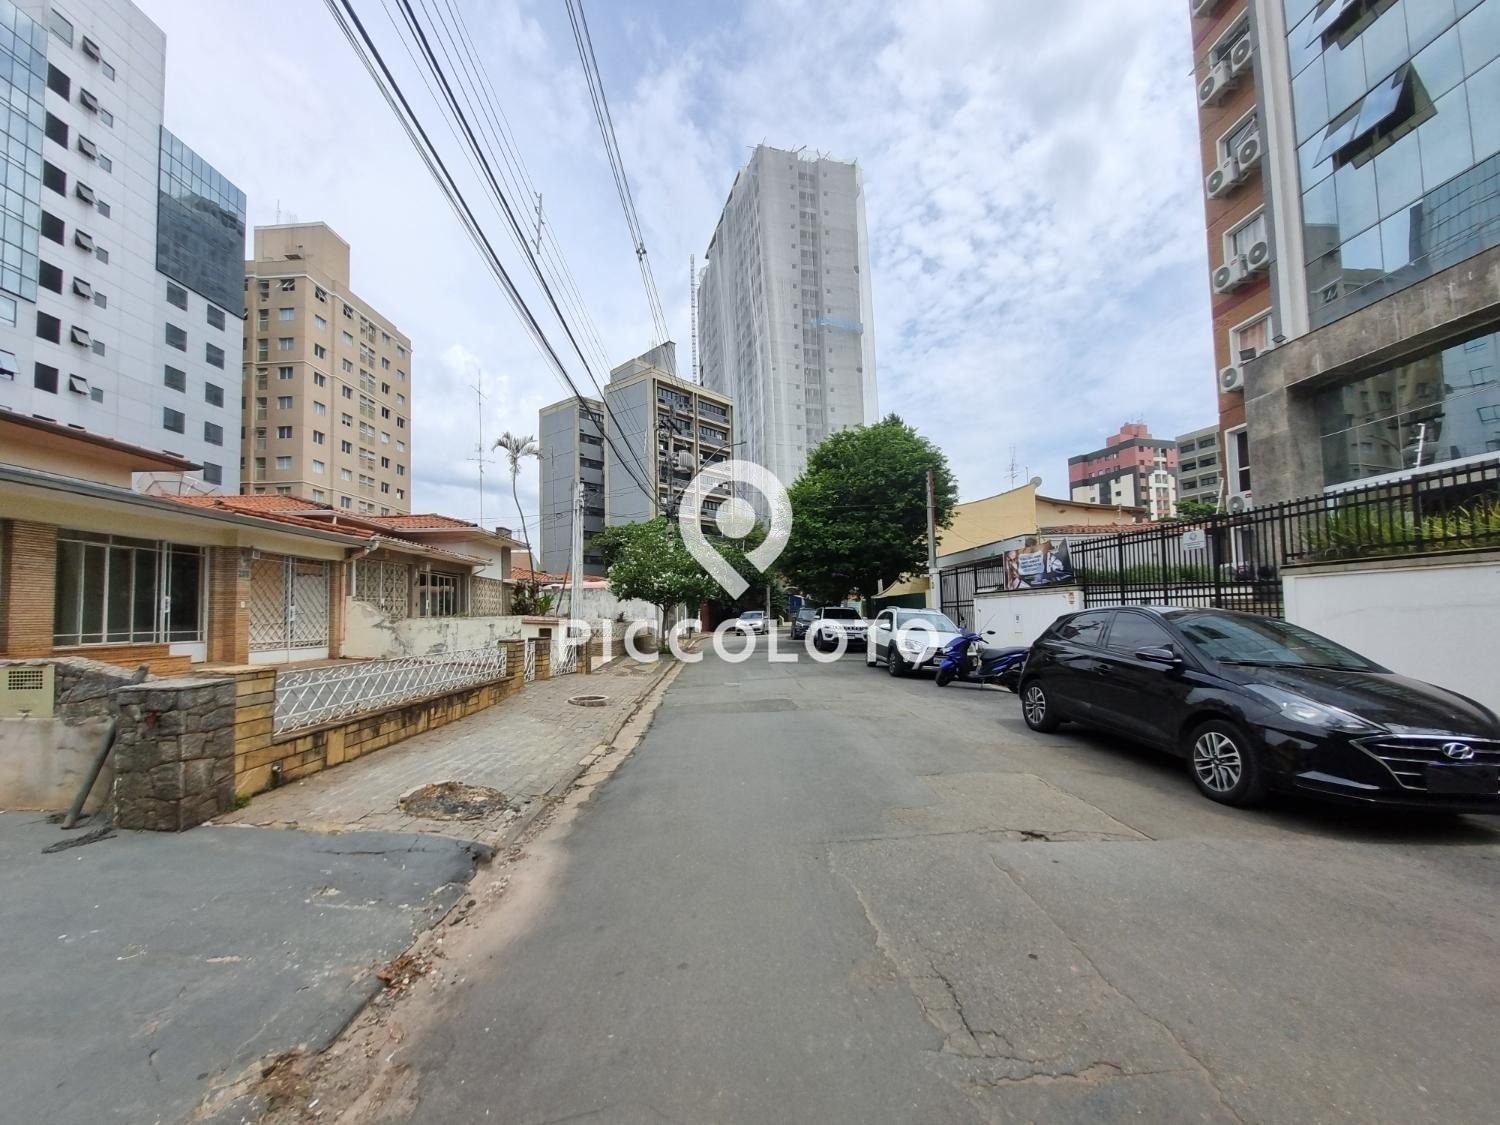 Piccoloto -Casa para alugar no Botafogo em Campinas